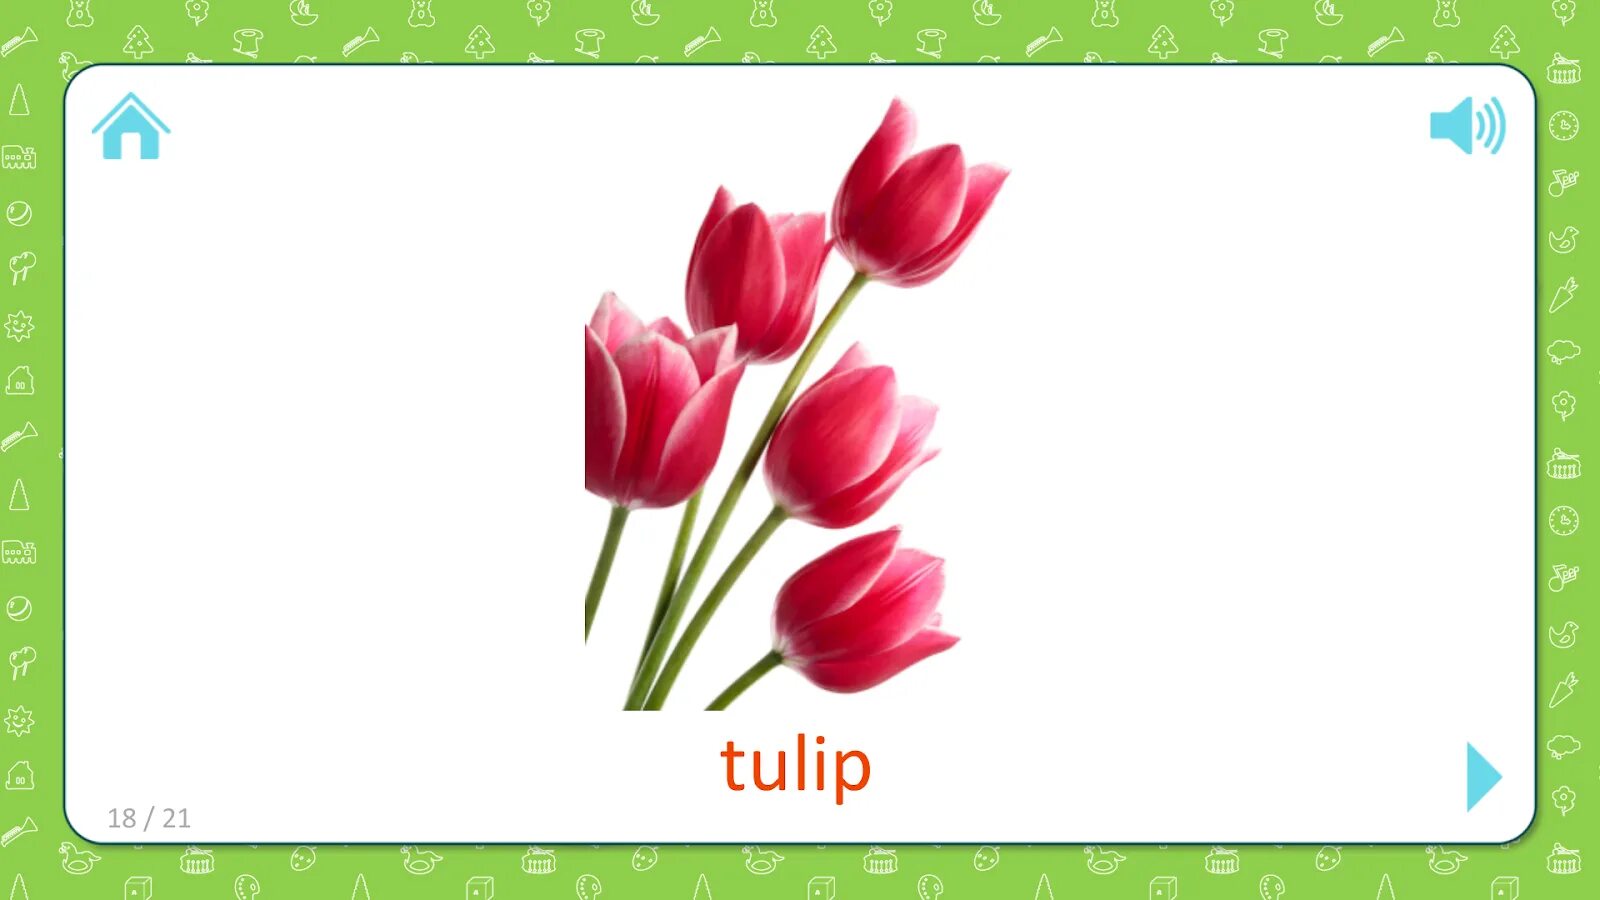 Тюльпан карточка для детей. Тюльпаны с карточкой. Карточки Tulip. Tulip карточка для детей.